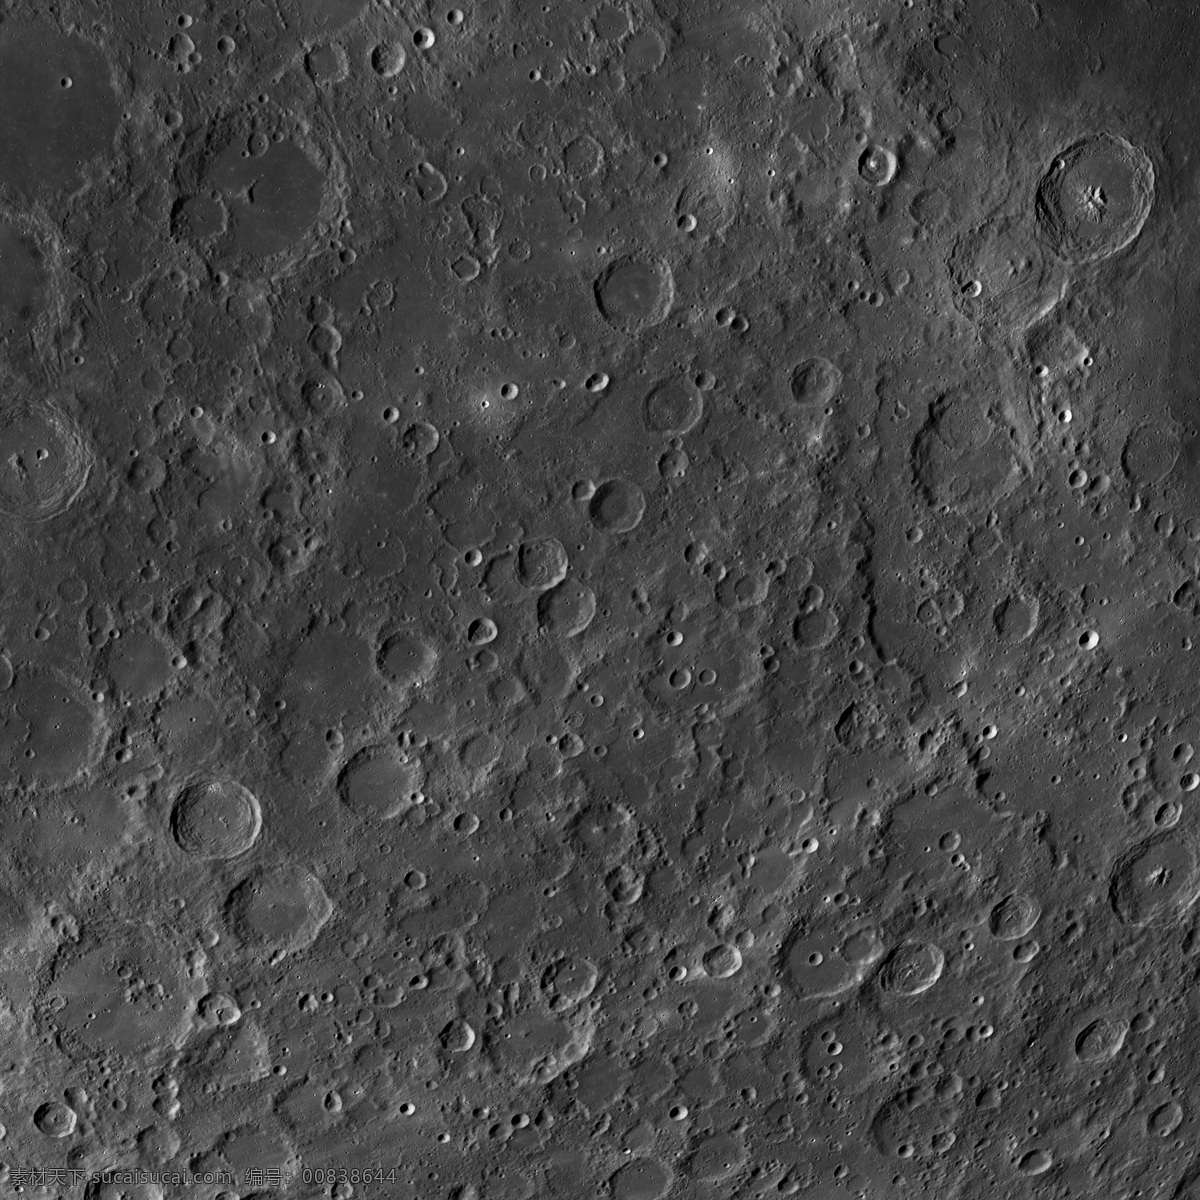 月球表面 8k图片 月亮 月球 月球地表 8k 未分类杂图